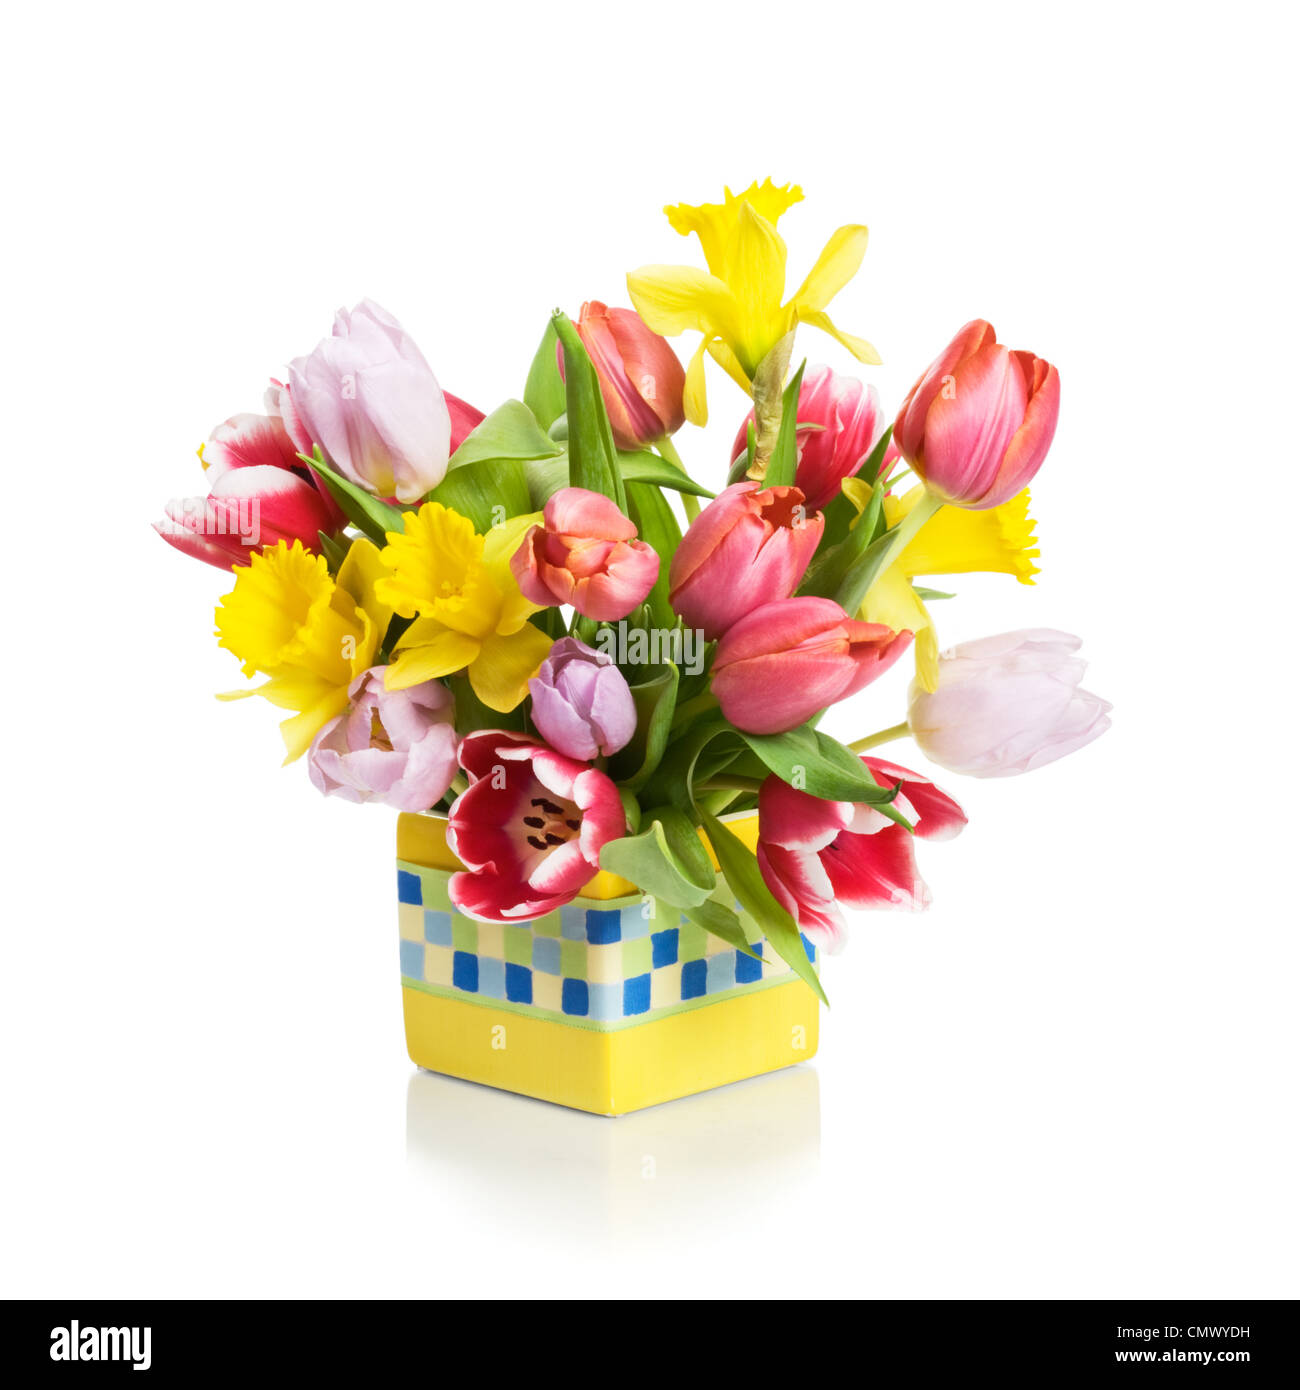 Pot de fleurs jaunes avec des tulipes et des jonquilles sur fond blanc Banque D'Images